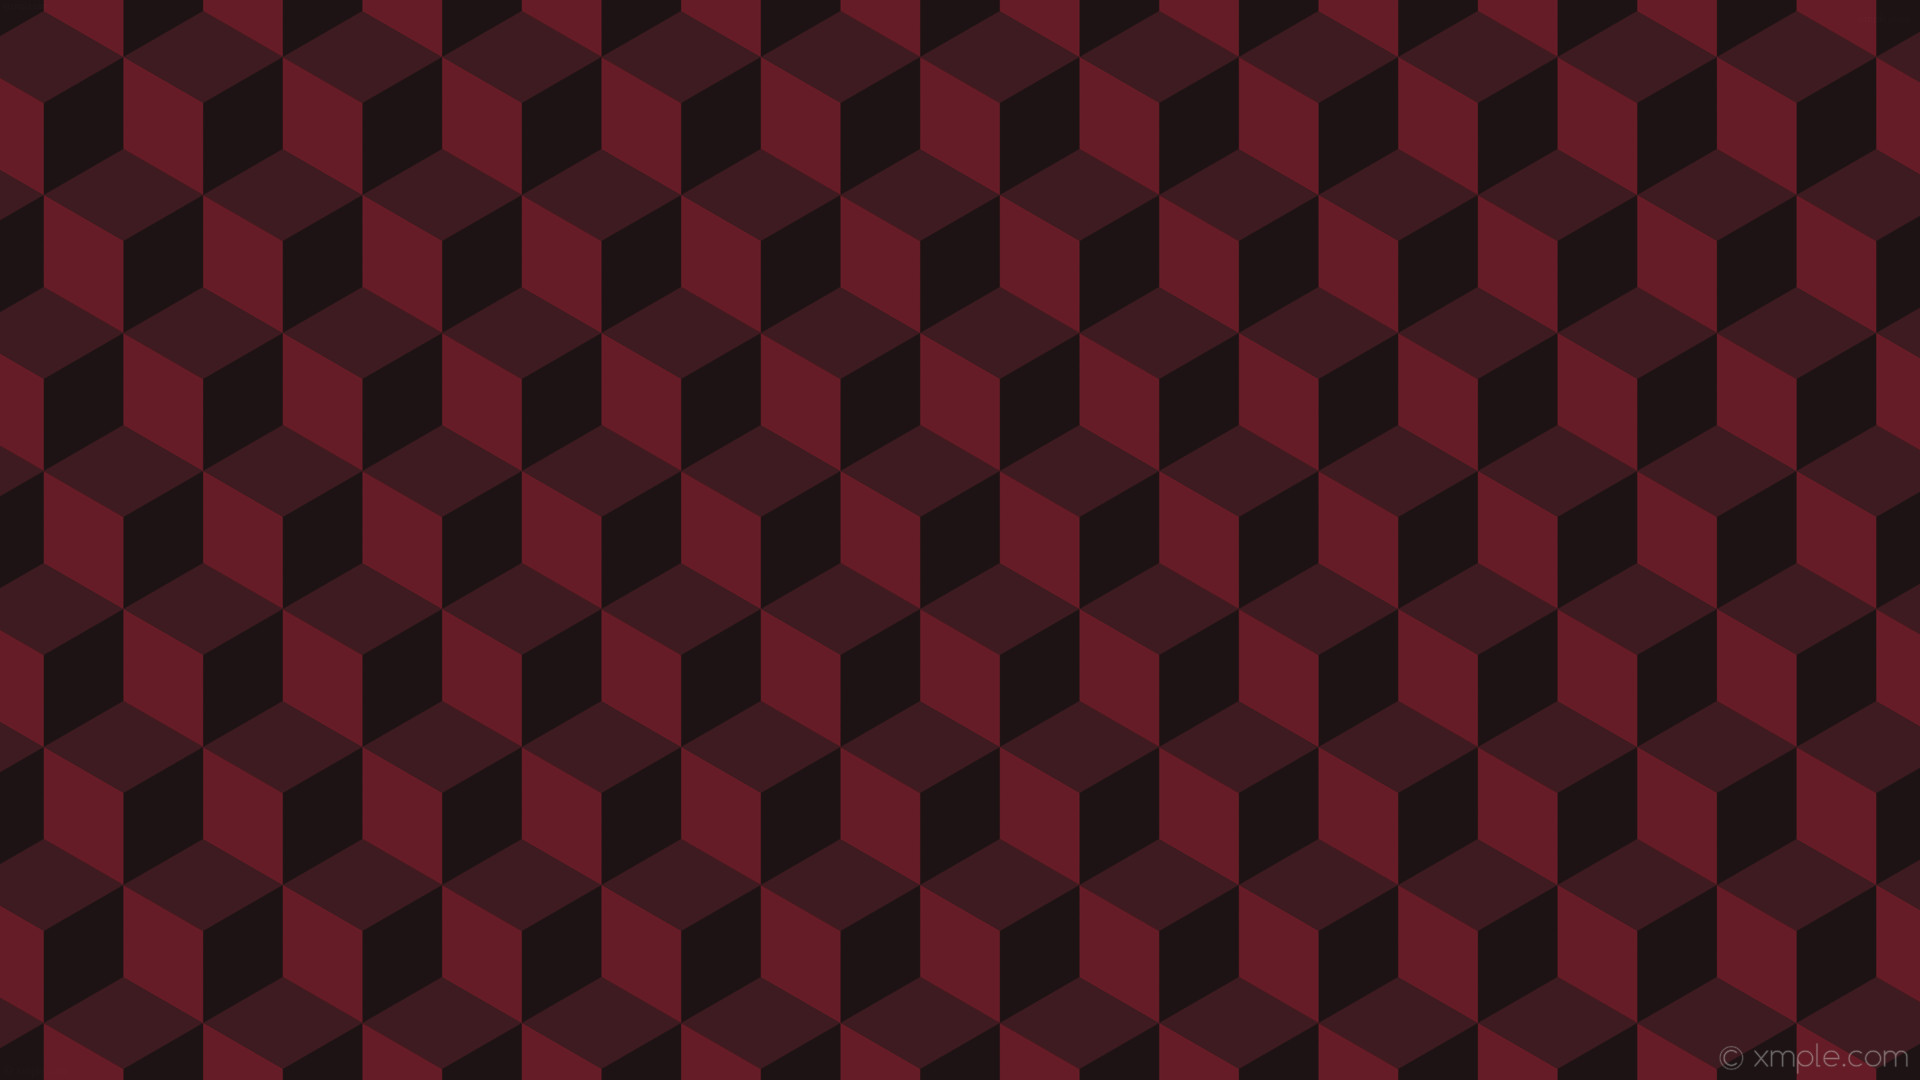 1920x1080 wallpaper red 3d cubes dark red #1d1314 #3e1b20 #661c26 60Â° 92px